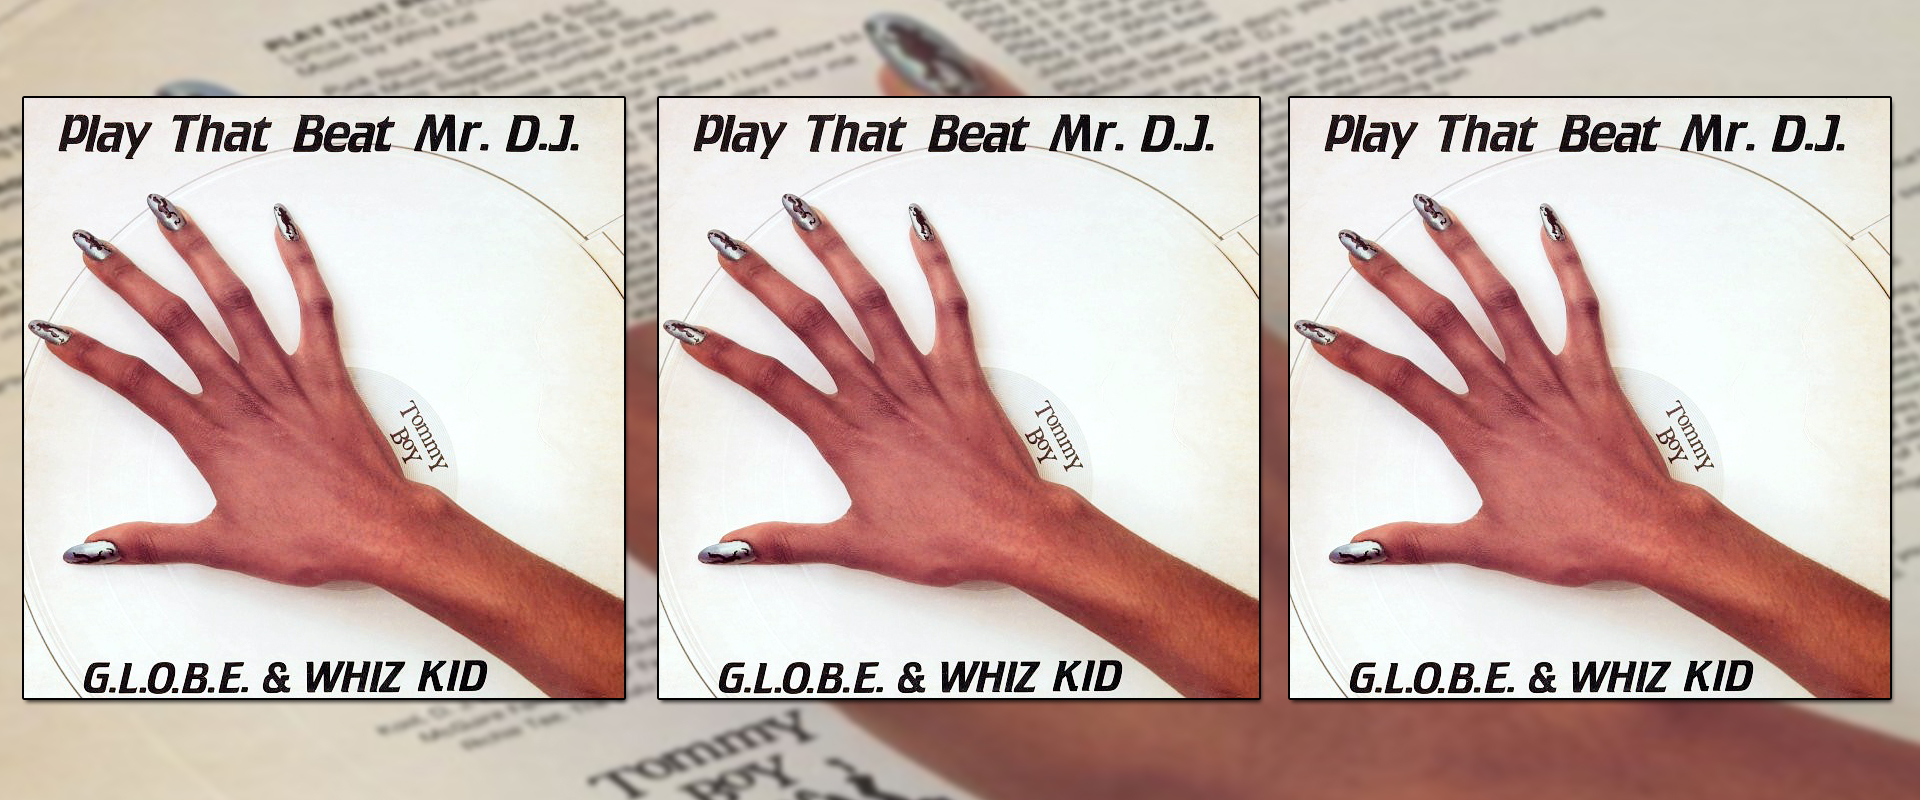 RTB Rewind: 'Play That Beat Mr. DJ' by G.L.O.B.E & Whiz Kid Turns 40